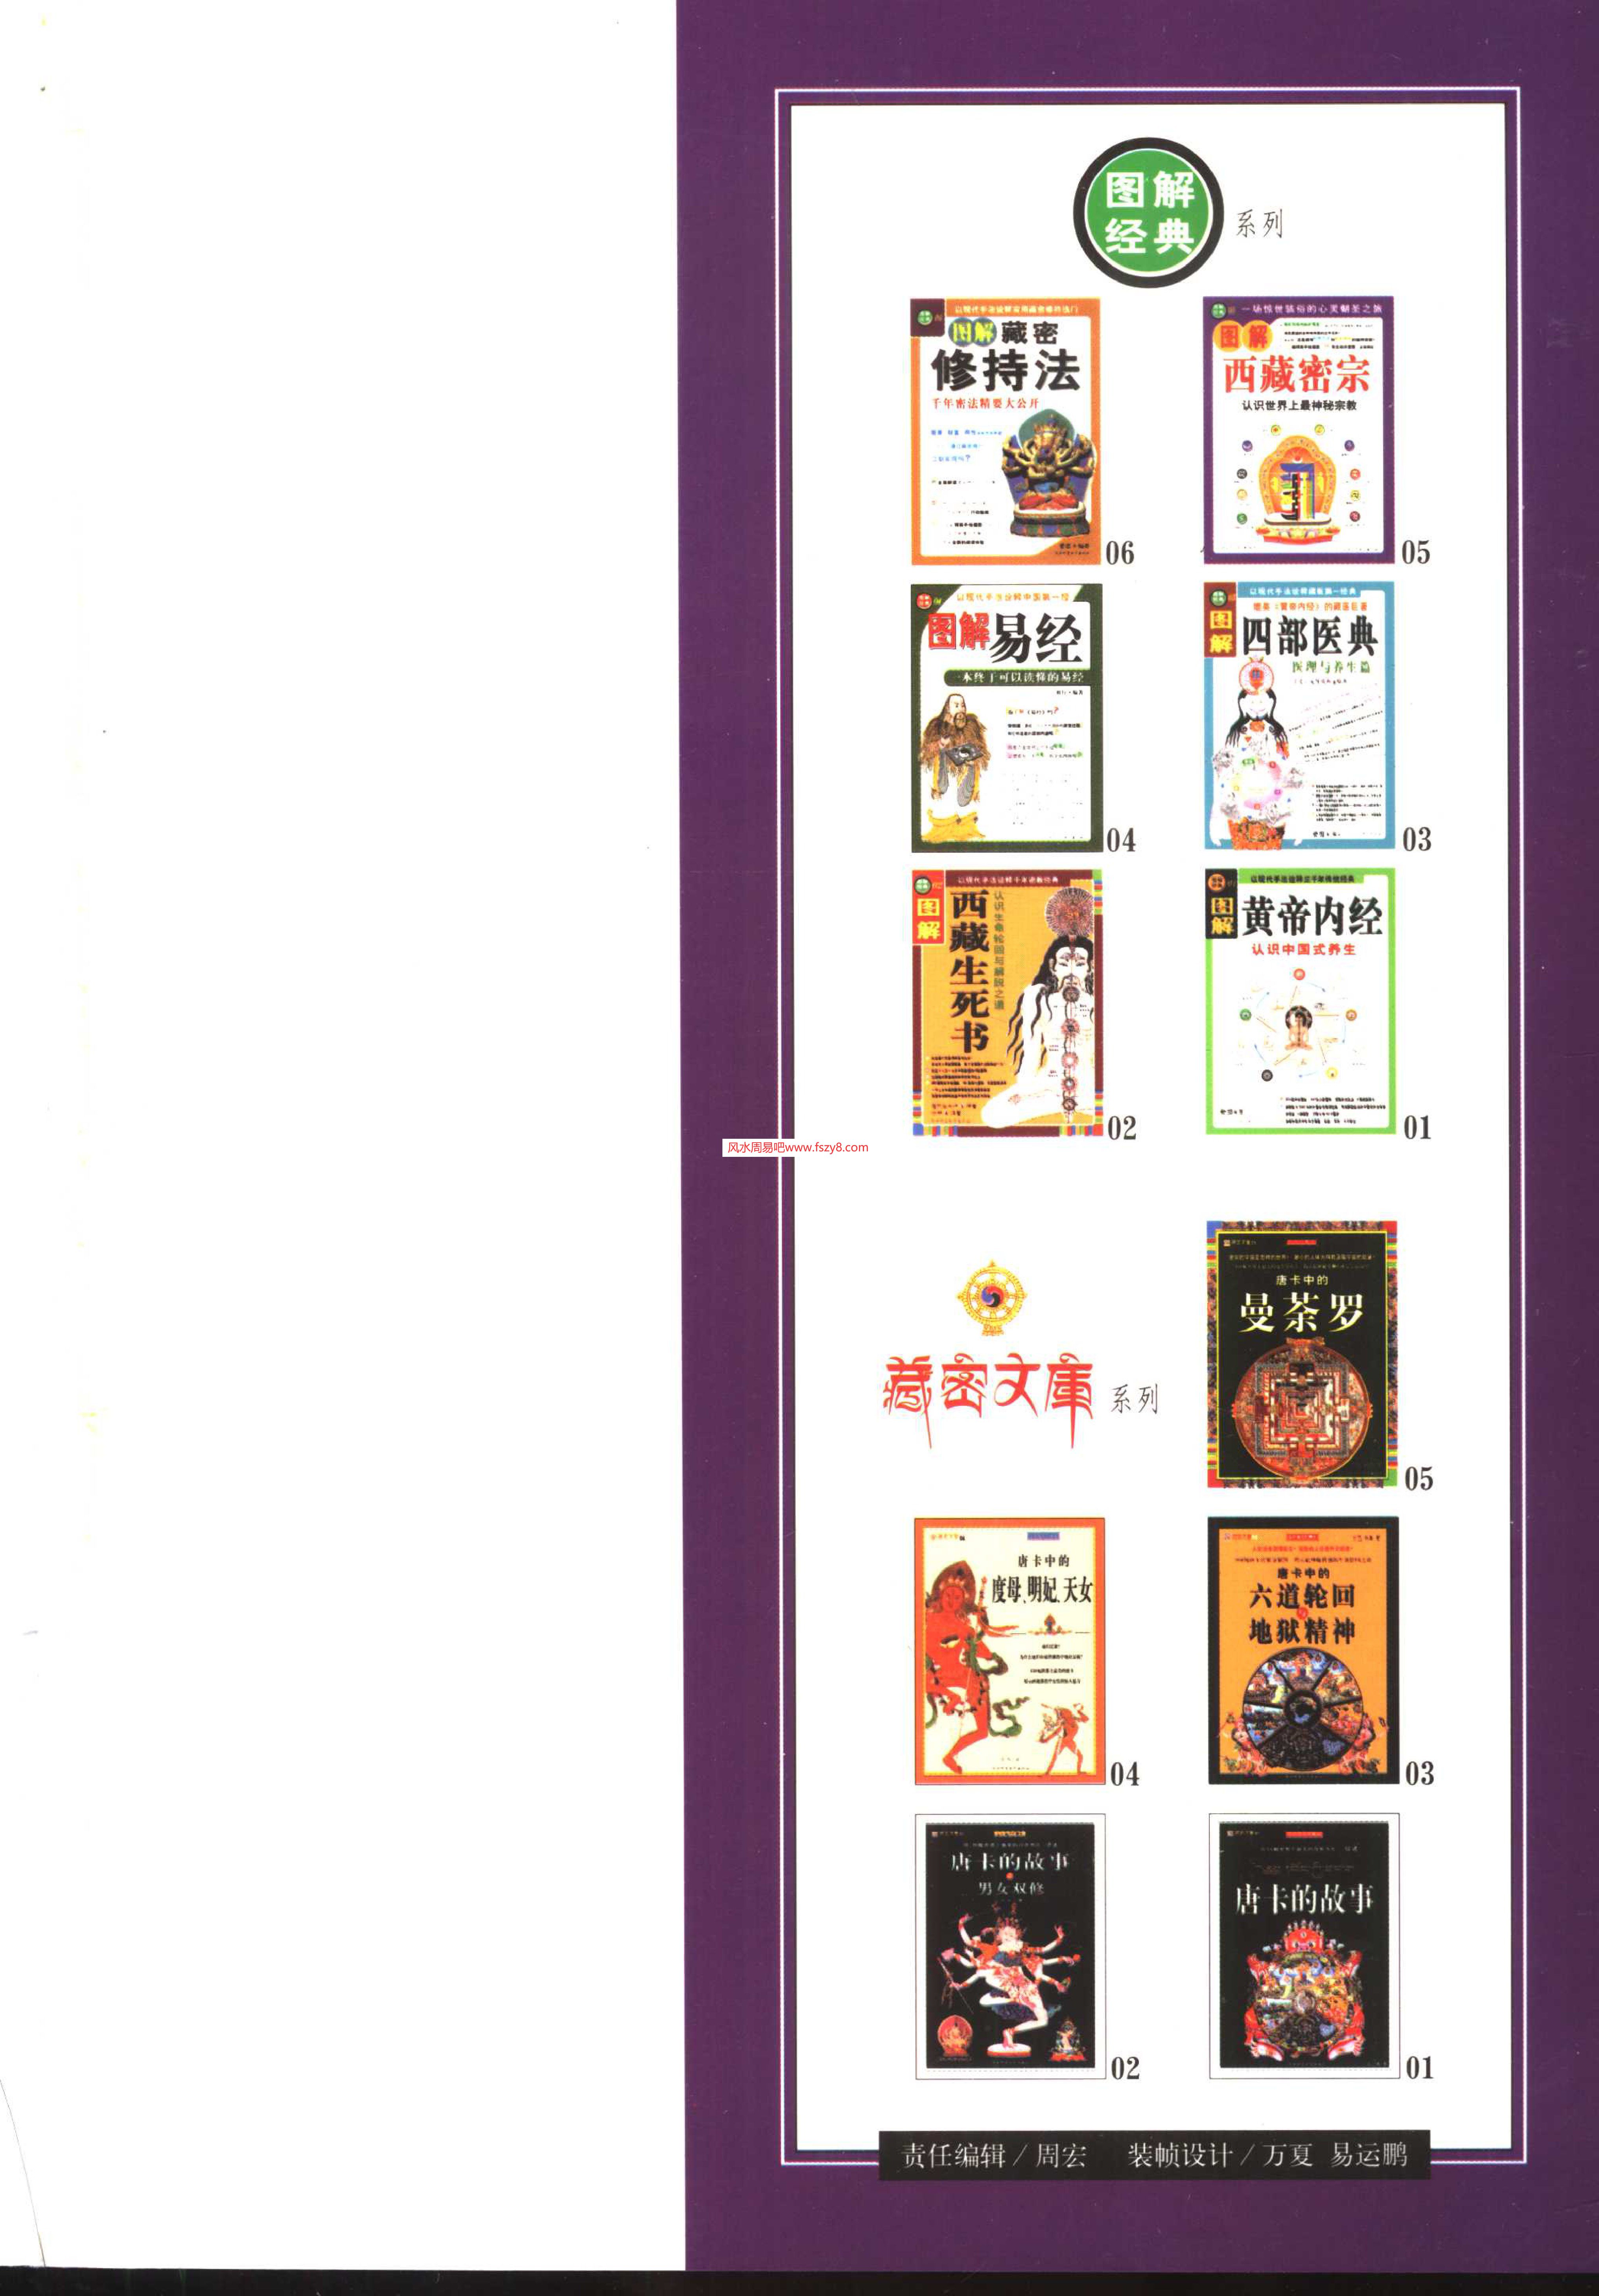 图解西藏密宗PDF电子书籍324页 图解西藏密宗书籍扫描(图4)